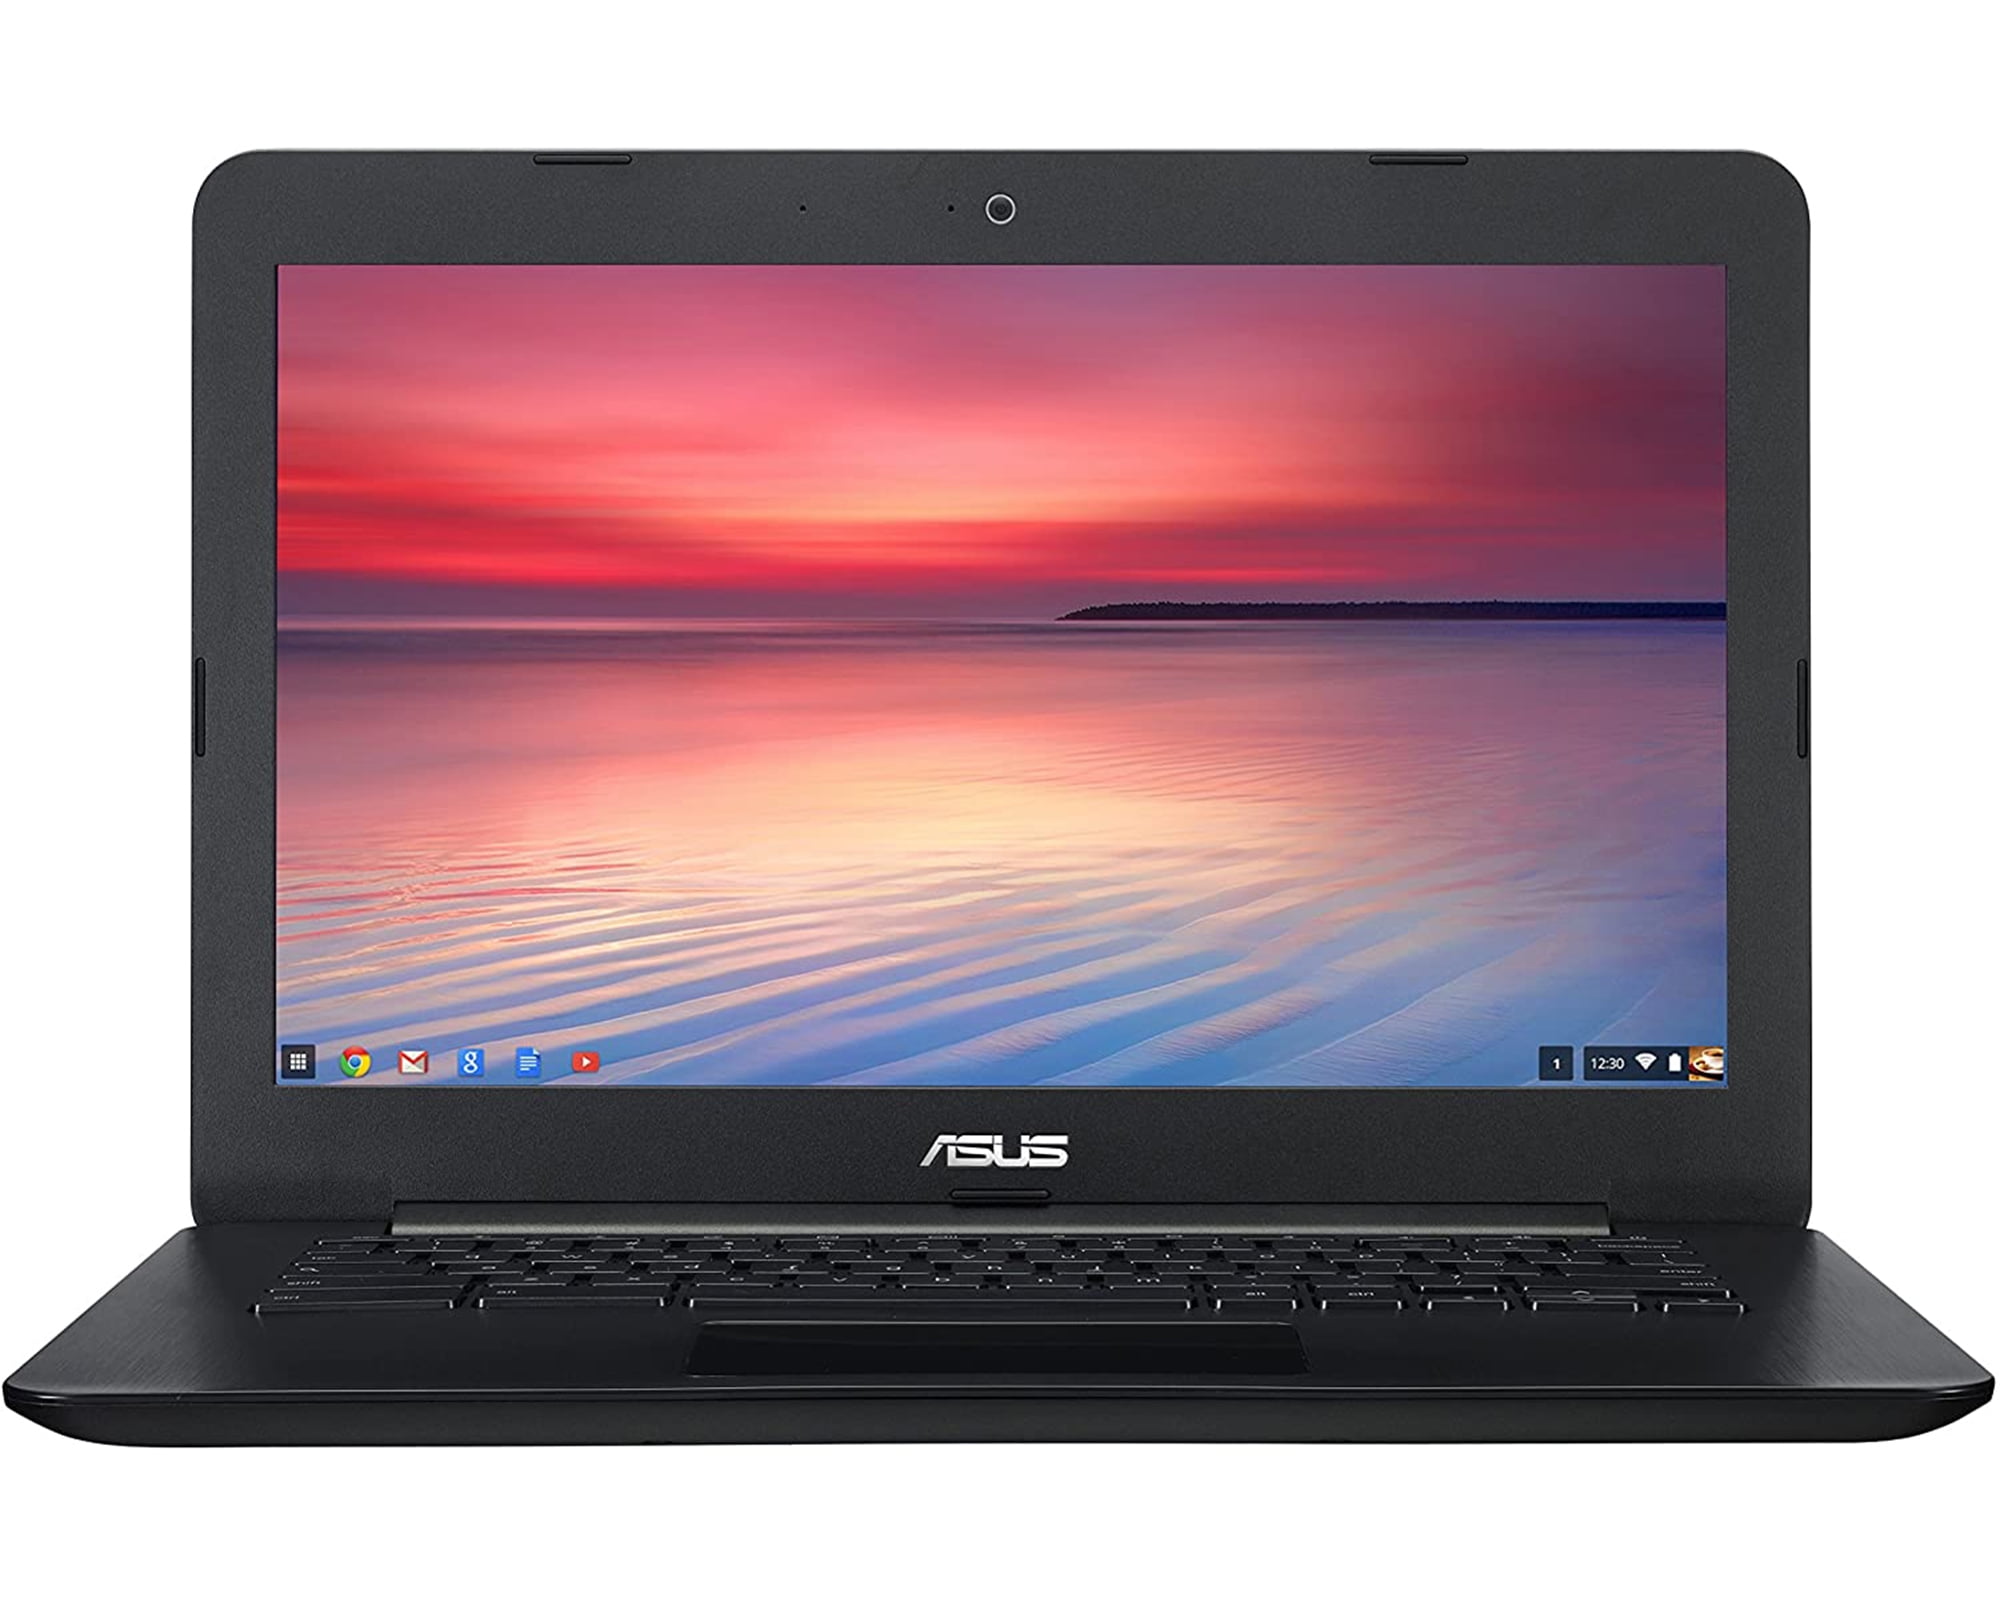 ASUS 13.3-inch Chromebook C300M-DH02 Laptop, 2.16 GHz Intel Celeron